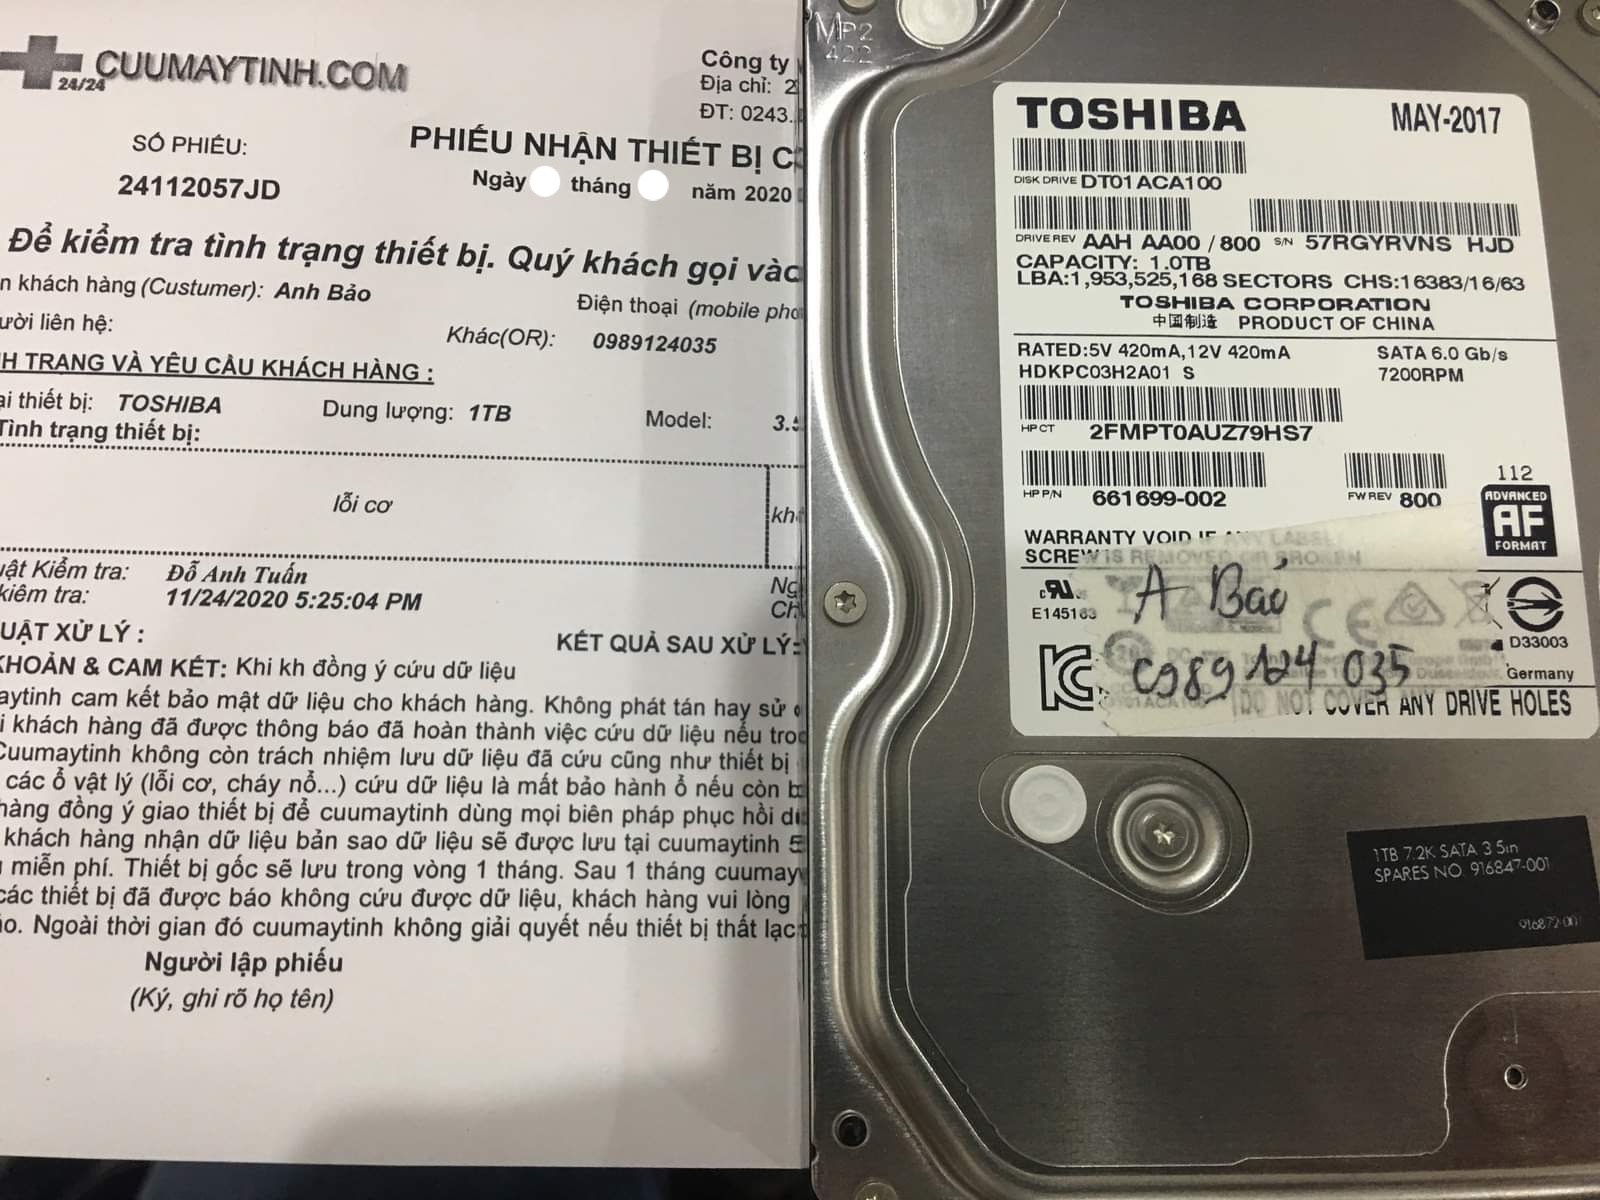 Cứu dữ liệu ổ cứng Toshiba 1TB lỗi cơ - 10/12/2020 - cuumaytinh
